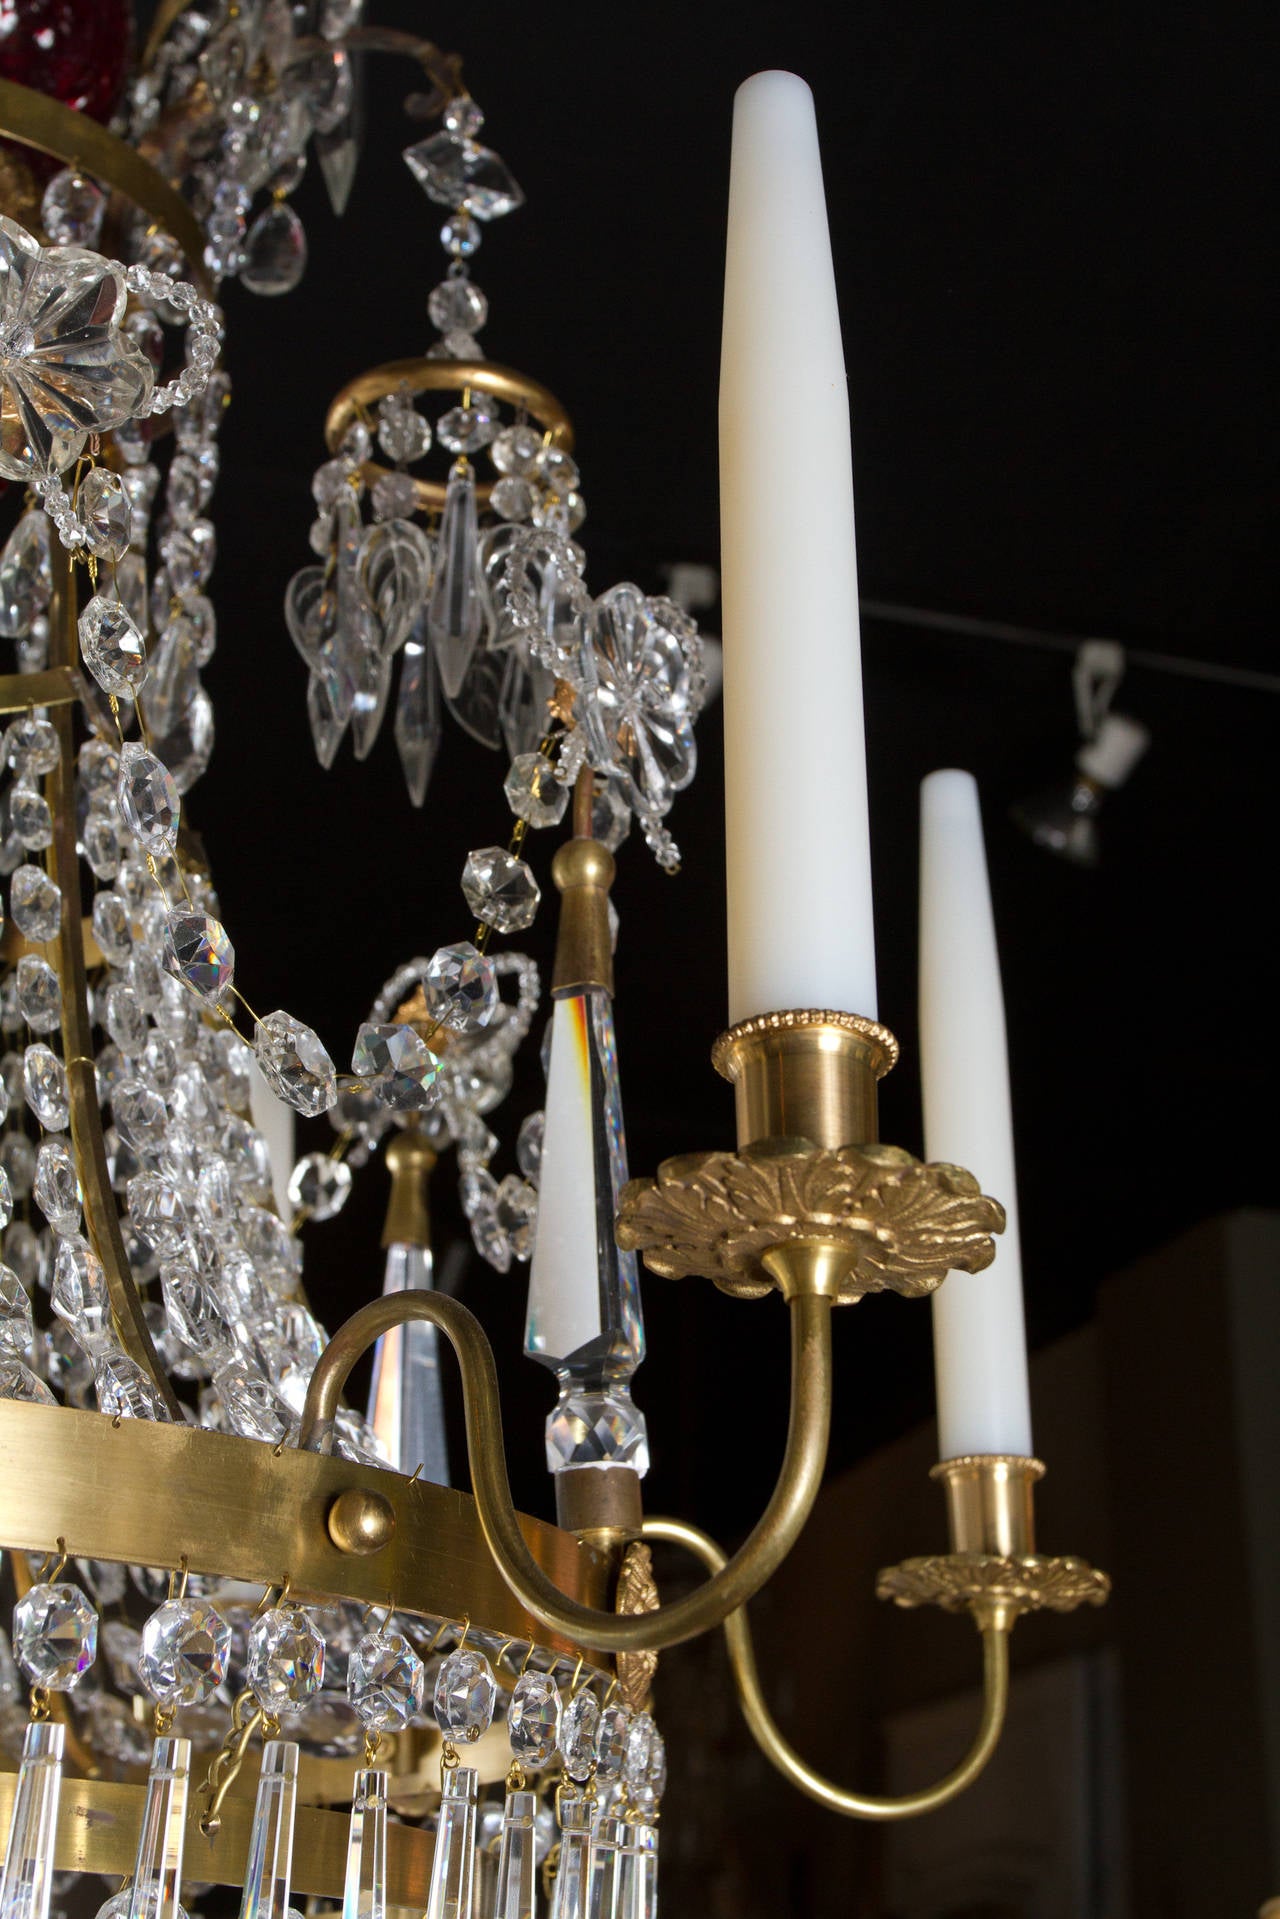 Sechsarmiger Kristallkronleuchter im neoklassischen russischen Stil mit Preiselbeerdekor.